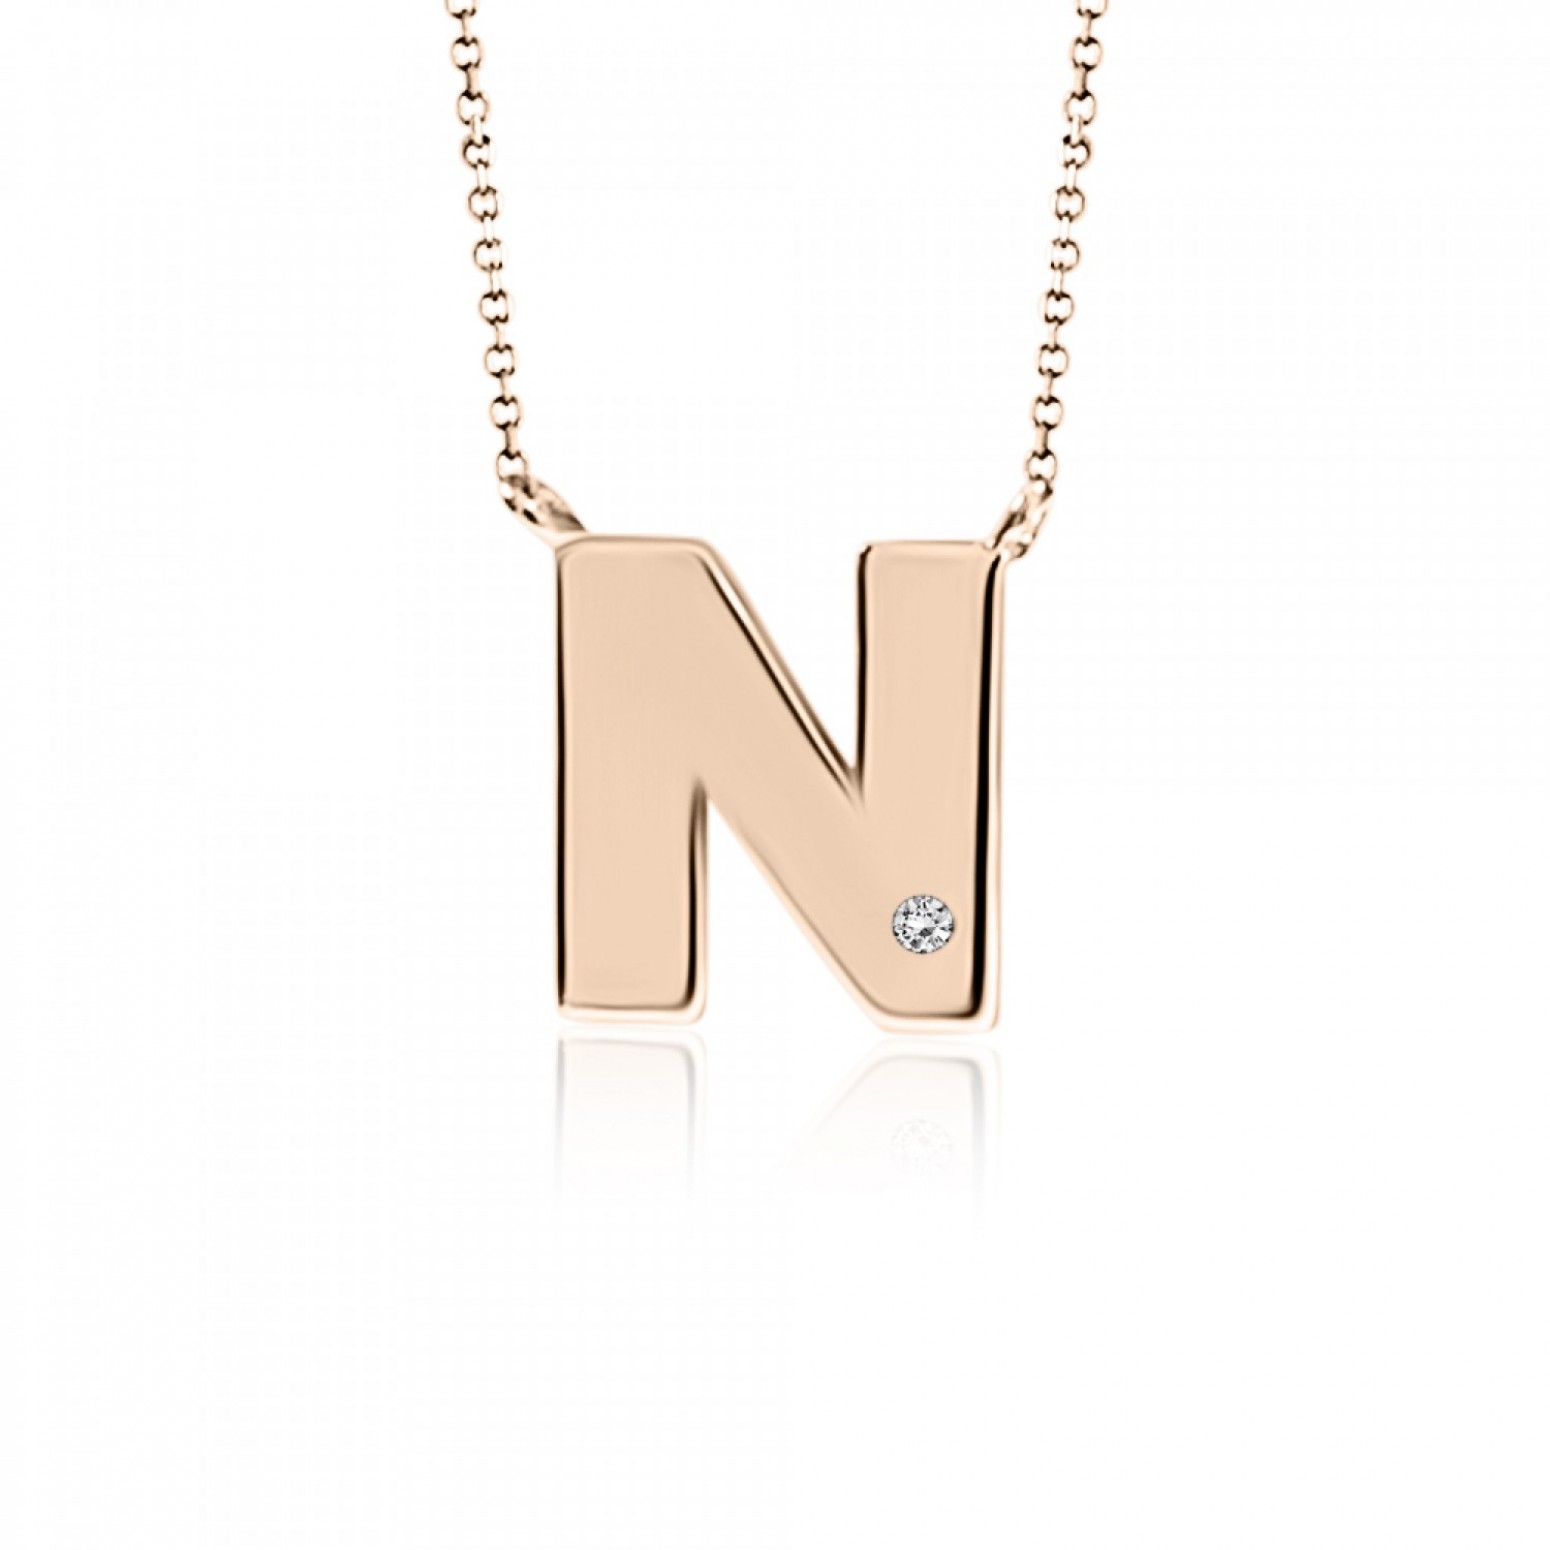 Monogram necklace Ν, Κ9 pink gold with diamond 0.005ct, VS2, H ko4889 NECKLACES Κοσμηματα - chrilia.gr